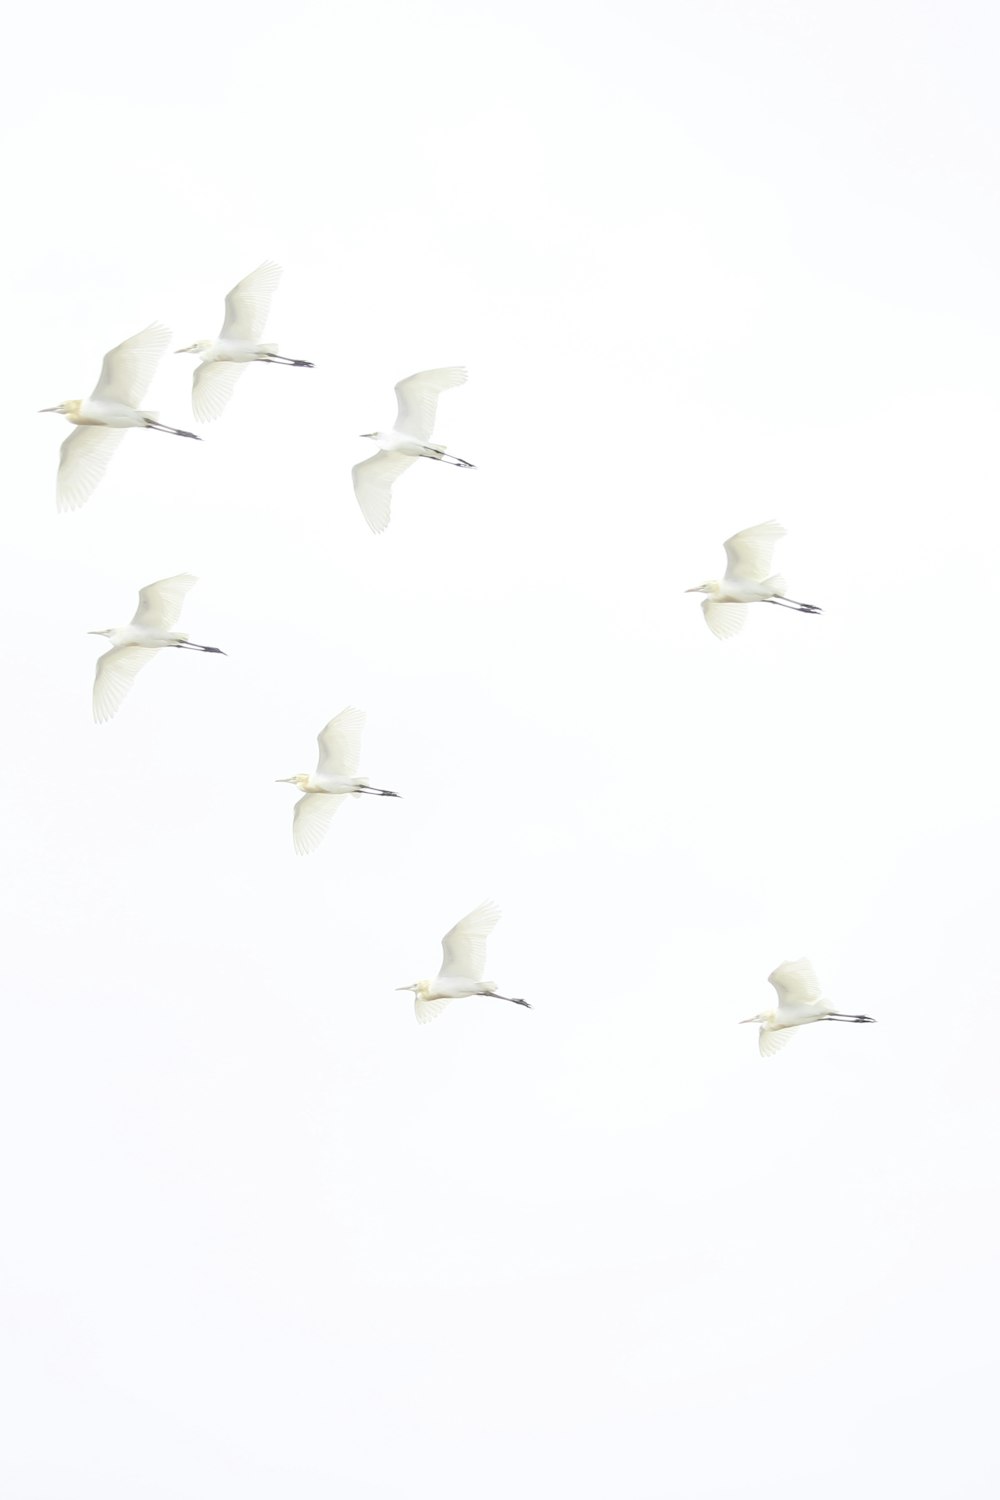 une volée d’oiseaux volant dans un ciel blanc